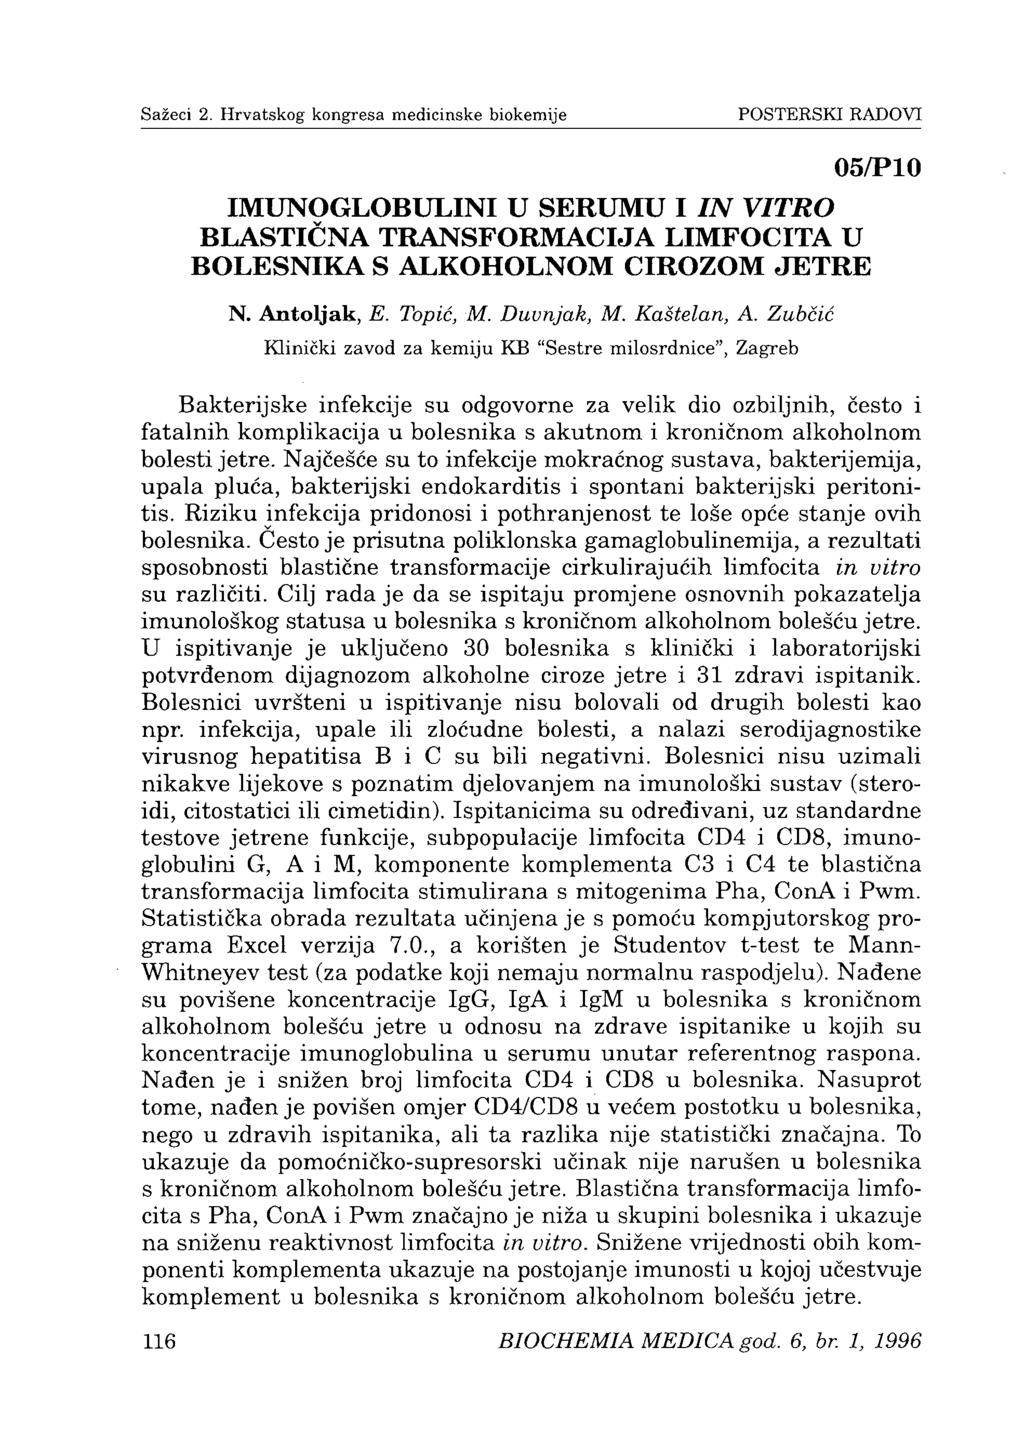 Sažeci 2. Hrvatskog kongresa medicinske biokemije POSTERSKI RADOVI 05/P10 IMUNOGLOBULINI U SERUMU I IN VITRO ELASTIČNA TRANSFORMACIJA LIMFOCITA U BOLESNIKA S ALKOHOLNOM CIROZOM JETRE N. Antoljak, E.